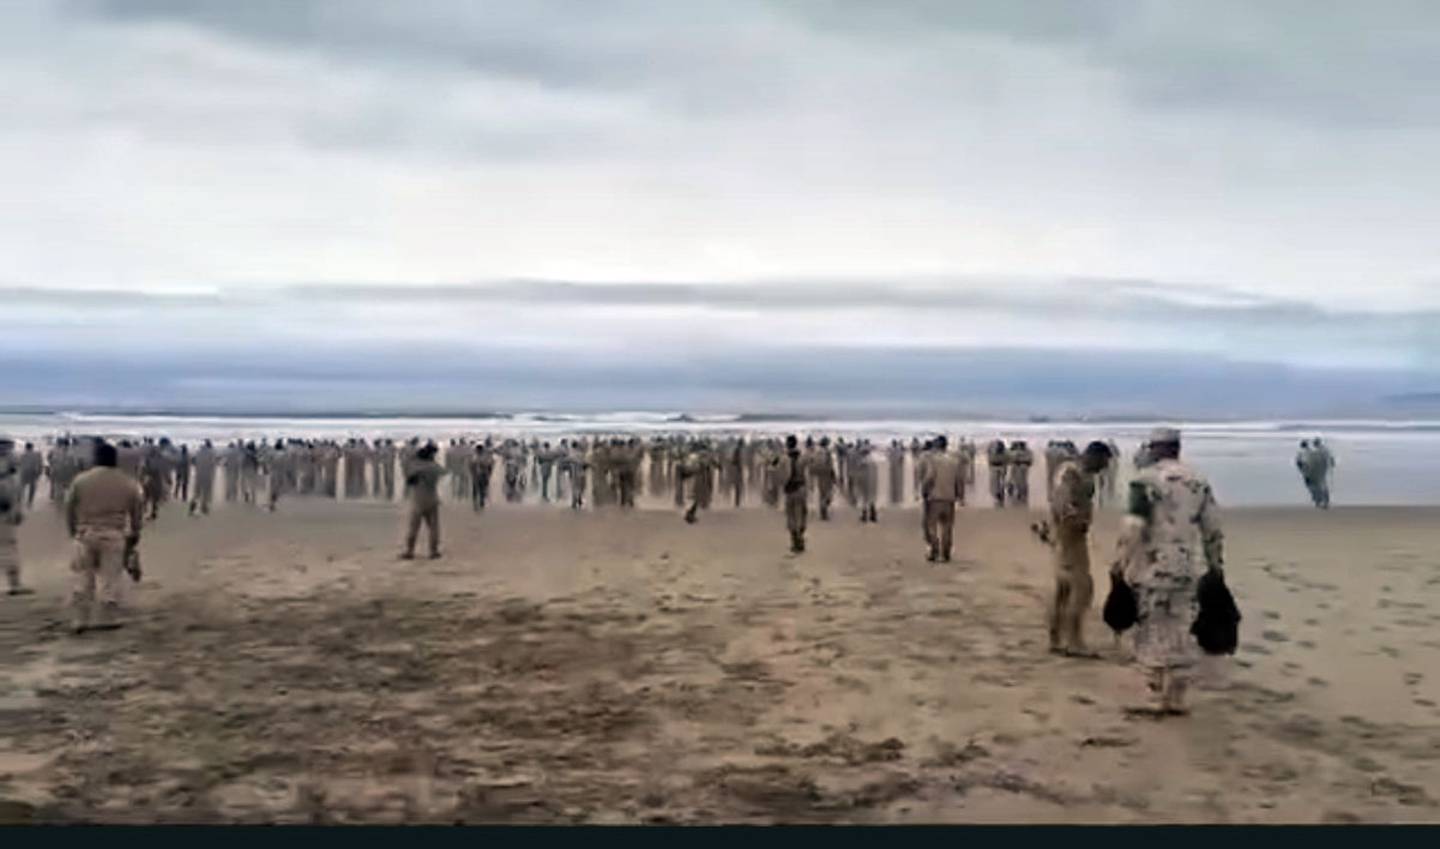 En uno de los videos se puede apreciar que son decenas de soldados los que corrieron hacia el mar, y uno, que se presume es el teniente, se queda observando desde la arena, también se puede percibir el oleaje intenso que había en la zona.